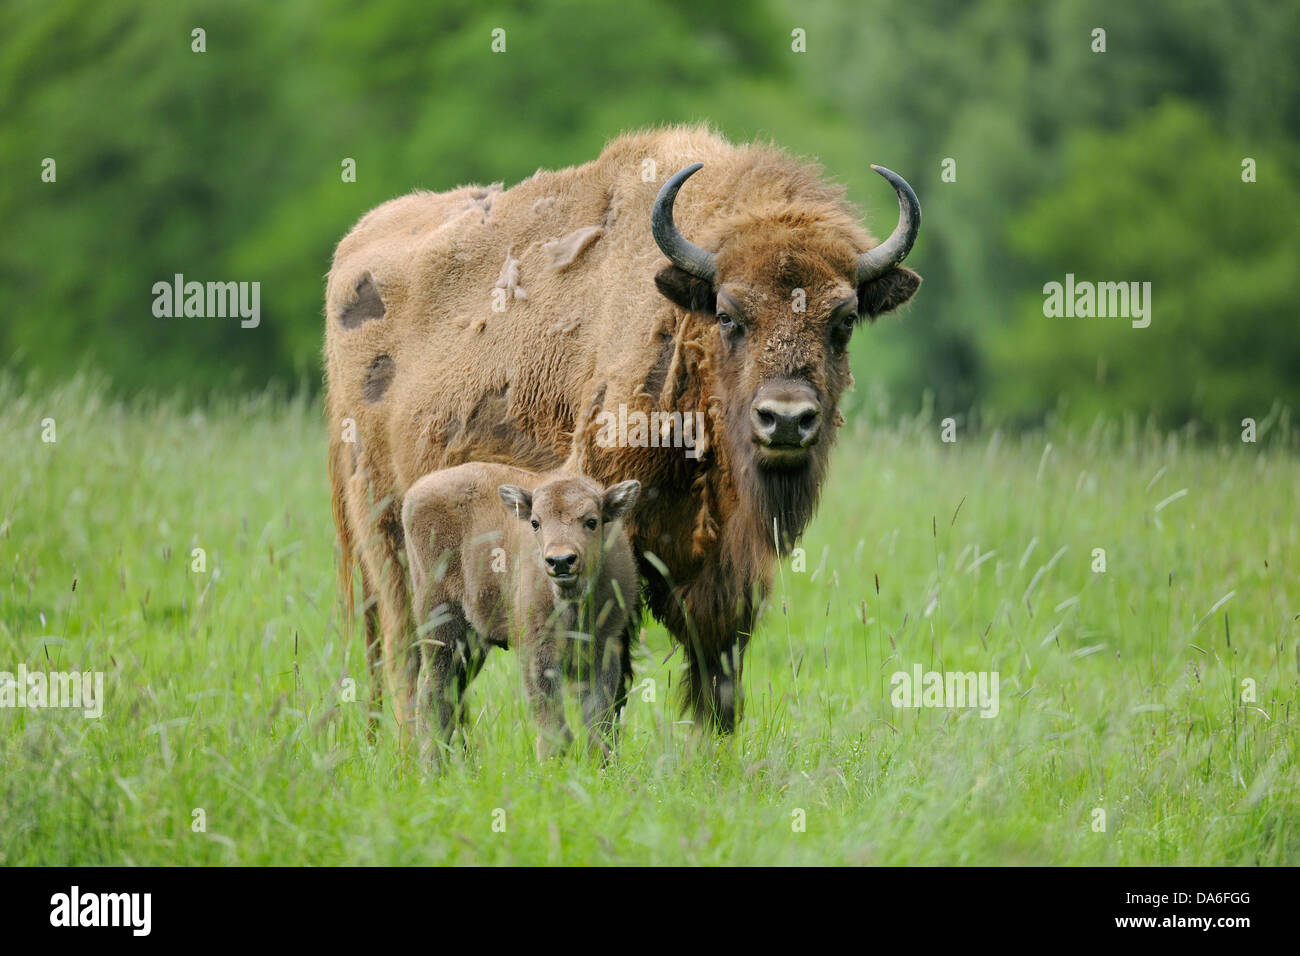 Wisent oder Europäische Bison (Bison Bonasus), Kuh mit einem Kalb, gefangen Stockfoto